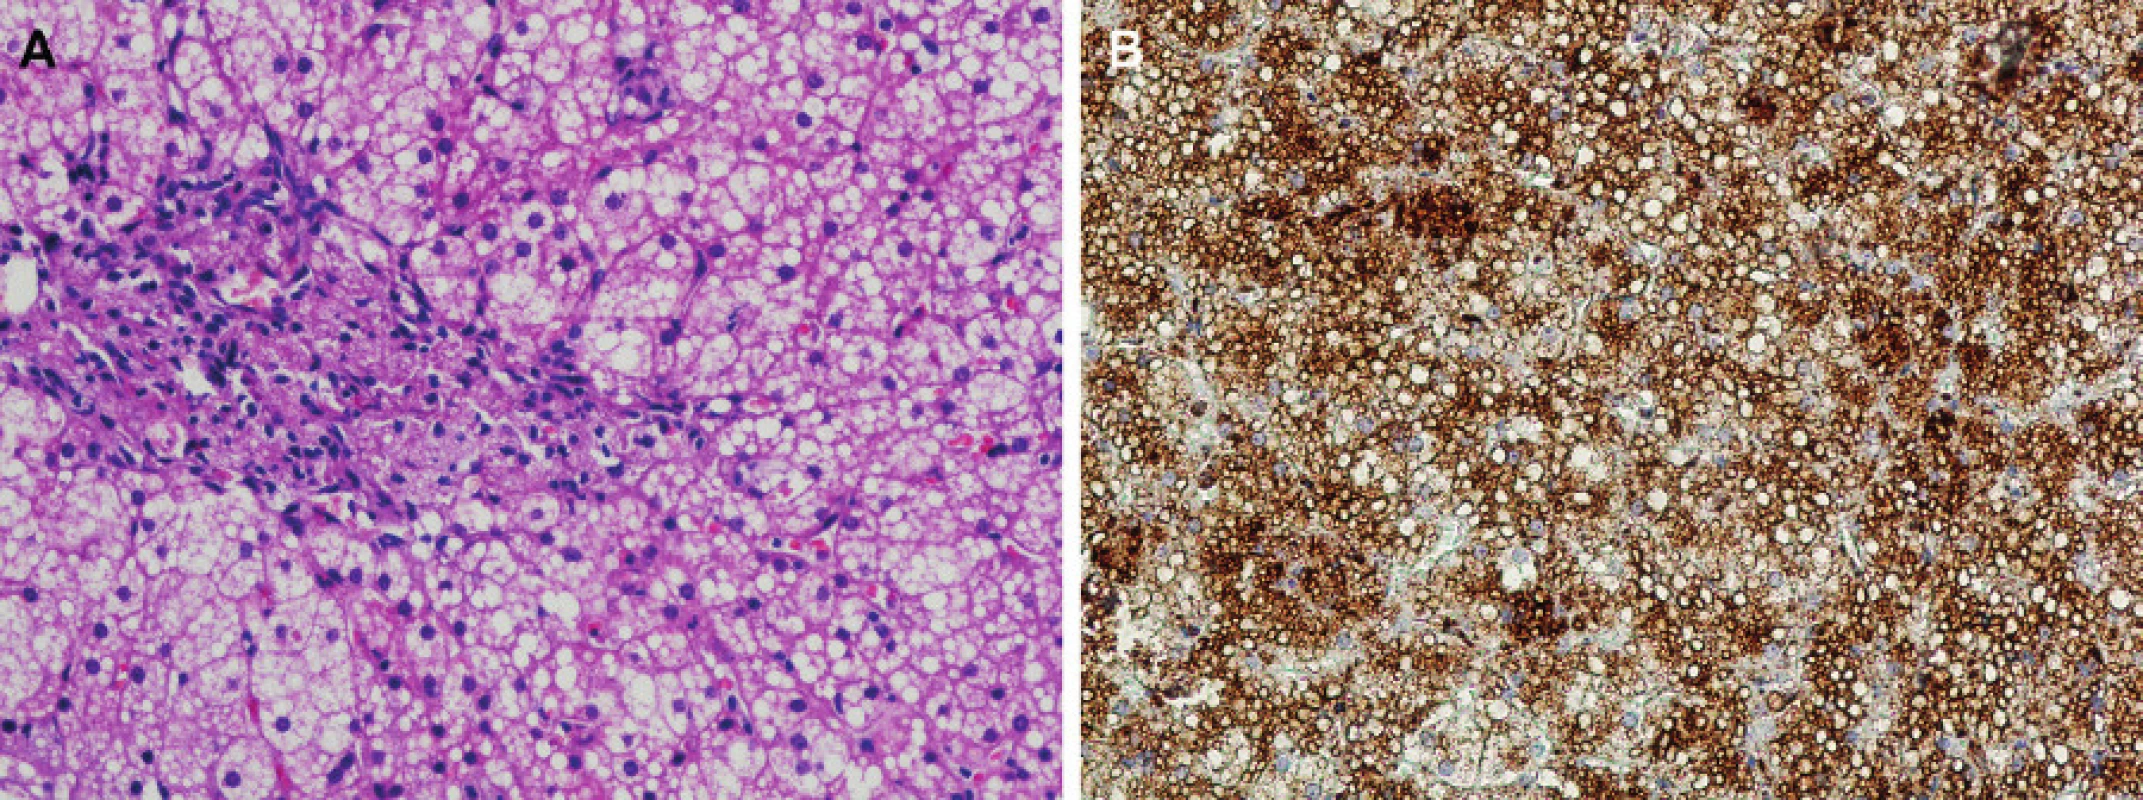 Typický nález jaterní biopsie u 2leté dívky s diagnózou CESD.
(A) Mikrovezikulární uniformní steatóza hepatocytů. Masivní infiltrace portálního pole střádajícími makrofágy a portální fibróza. Barvení HE, zvětšení 20x.
(B) Imunohistochemická detekce lysosomálního markeru LAMP2 demonstrující výraznou expanzi lysosomálního systému hepatocytů a intralysosomální lokalizaci střádaných kapének neutrálních lipidů. Zvětšení 20x.
Fig. 1. Fig. 1. Typical finding of liver biopsy in a 2-year girl with CESD diagnosis.
(A) Microvesicular uniform steatosis of hypatocytes. Massive infiltration of the portal field by storing macrophages and signs of portal fibrosis are apparent. HE staining, objective 20-fold.
(B) Immunohistochemical detection of lysosomal marker LAMP2 demonstrating a marked expansion of the hepatocyte lysosomal system and intralysosomal localization of the stored droplets of neutral lipids. Objective 20-fold.